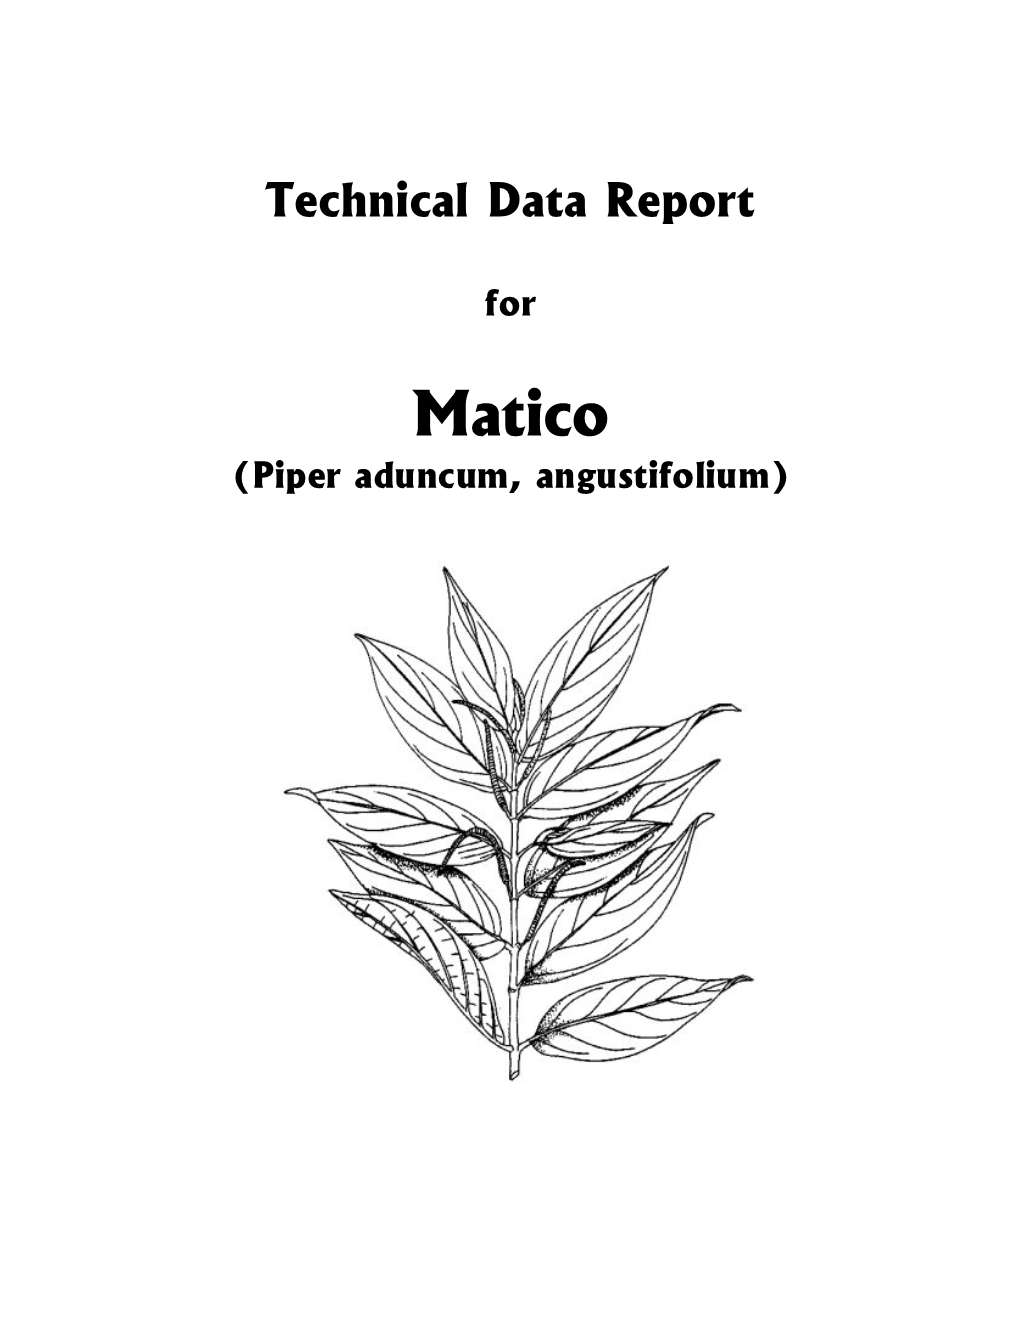 Matico (Piper Aduncum, Angustifolium) © Copyrighted 2006